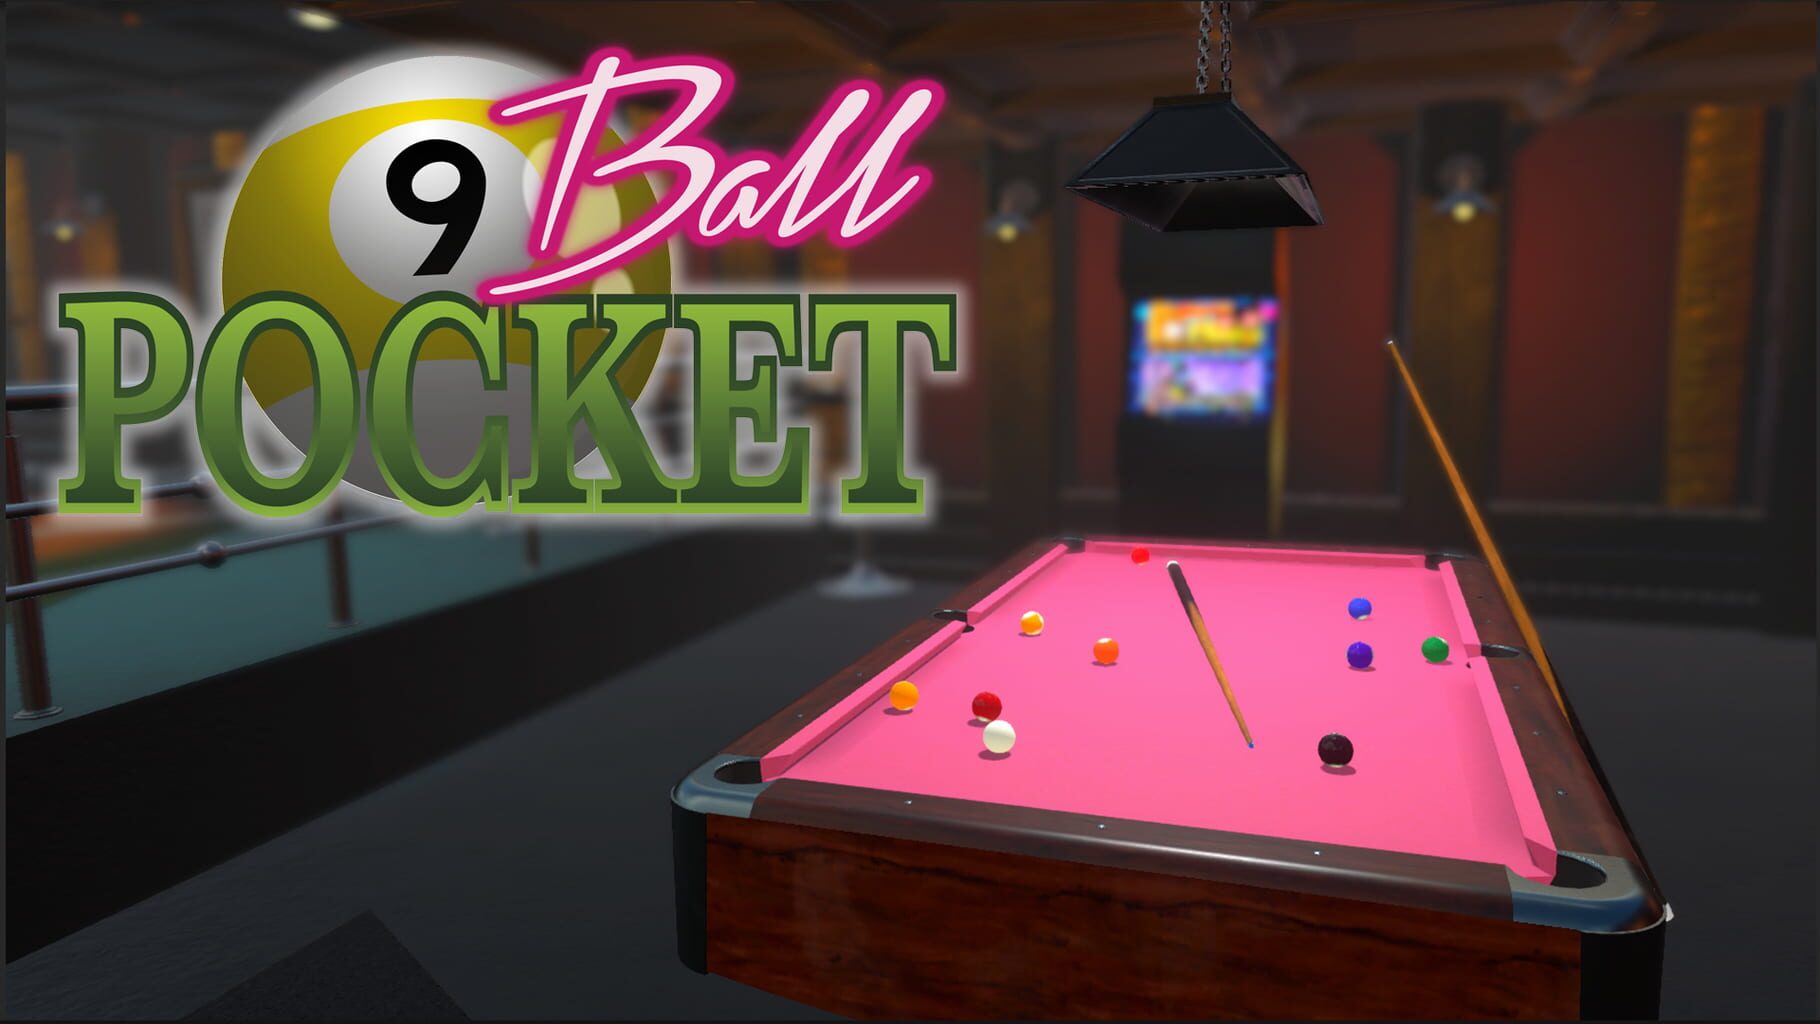 Arte - 9-Ball Pocket